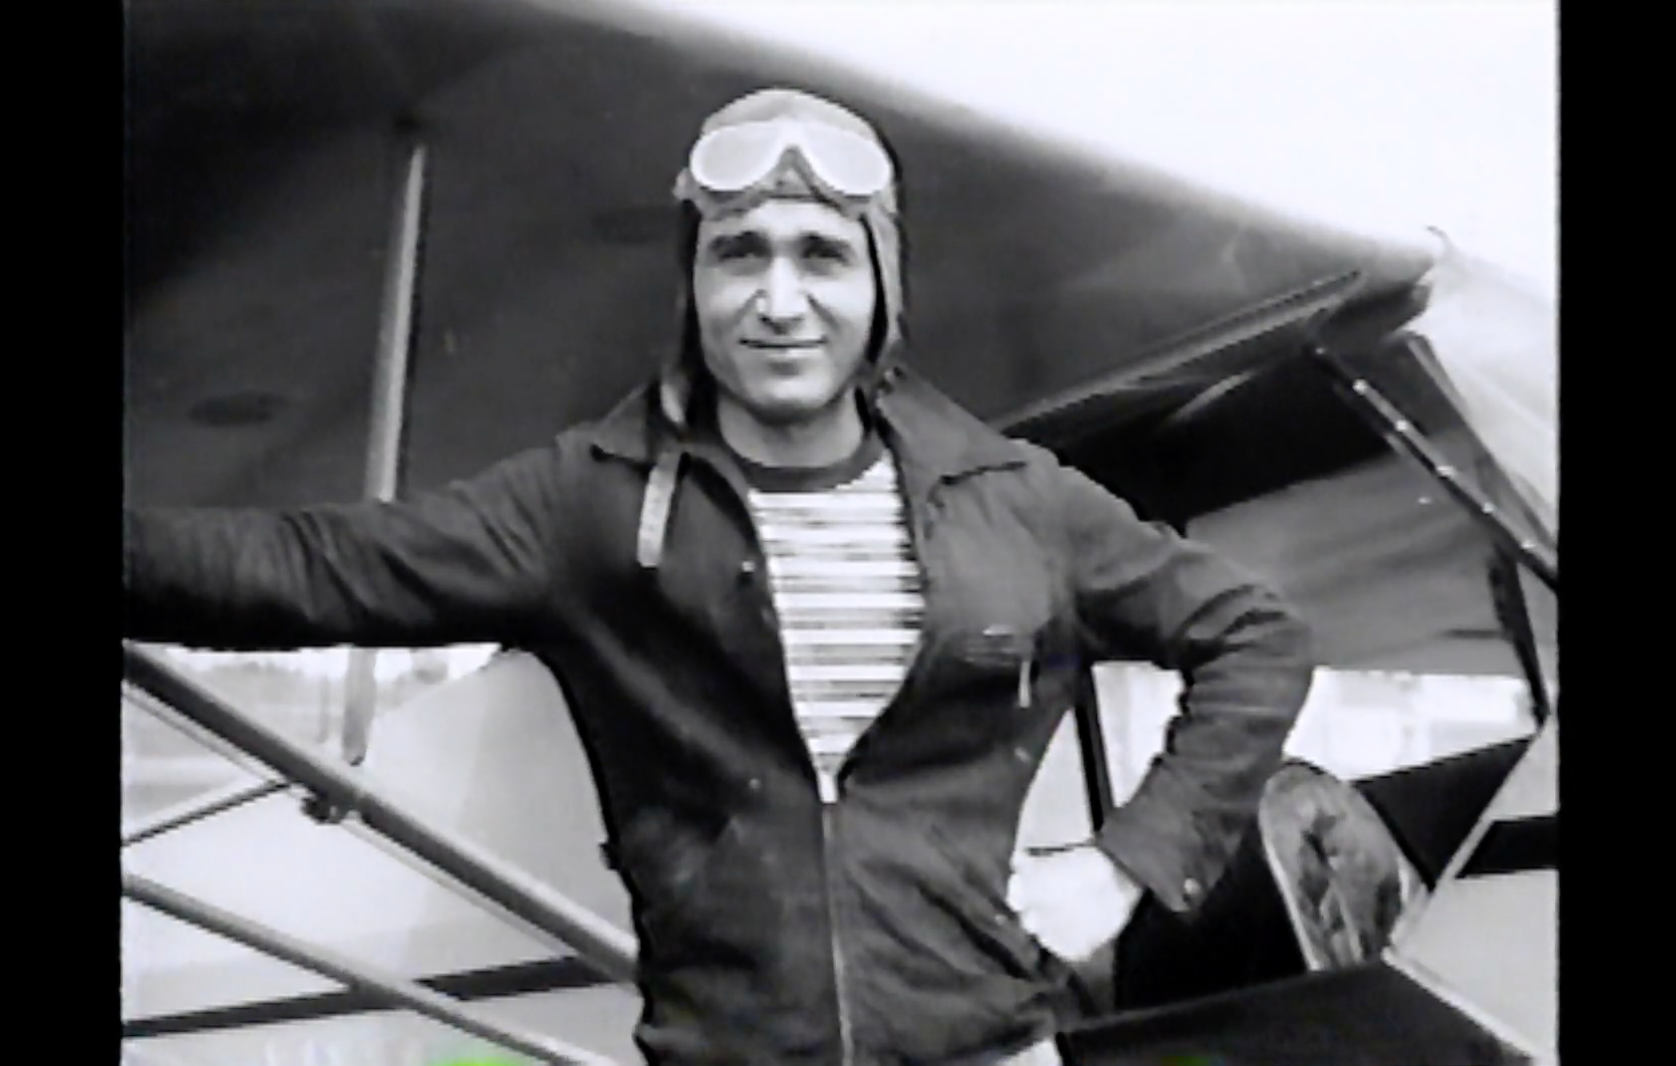 AHEPA remembers the story of U.S. Col. Steve N. Pisanos “The Flying Greek”